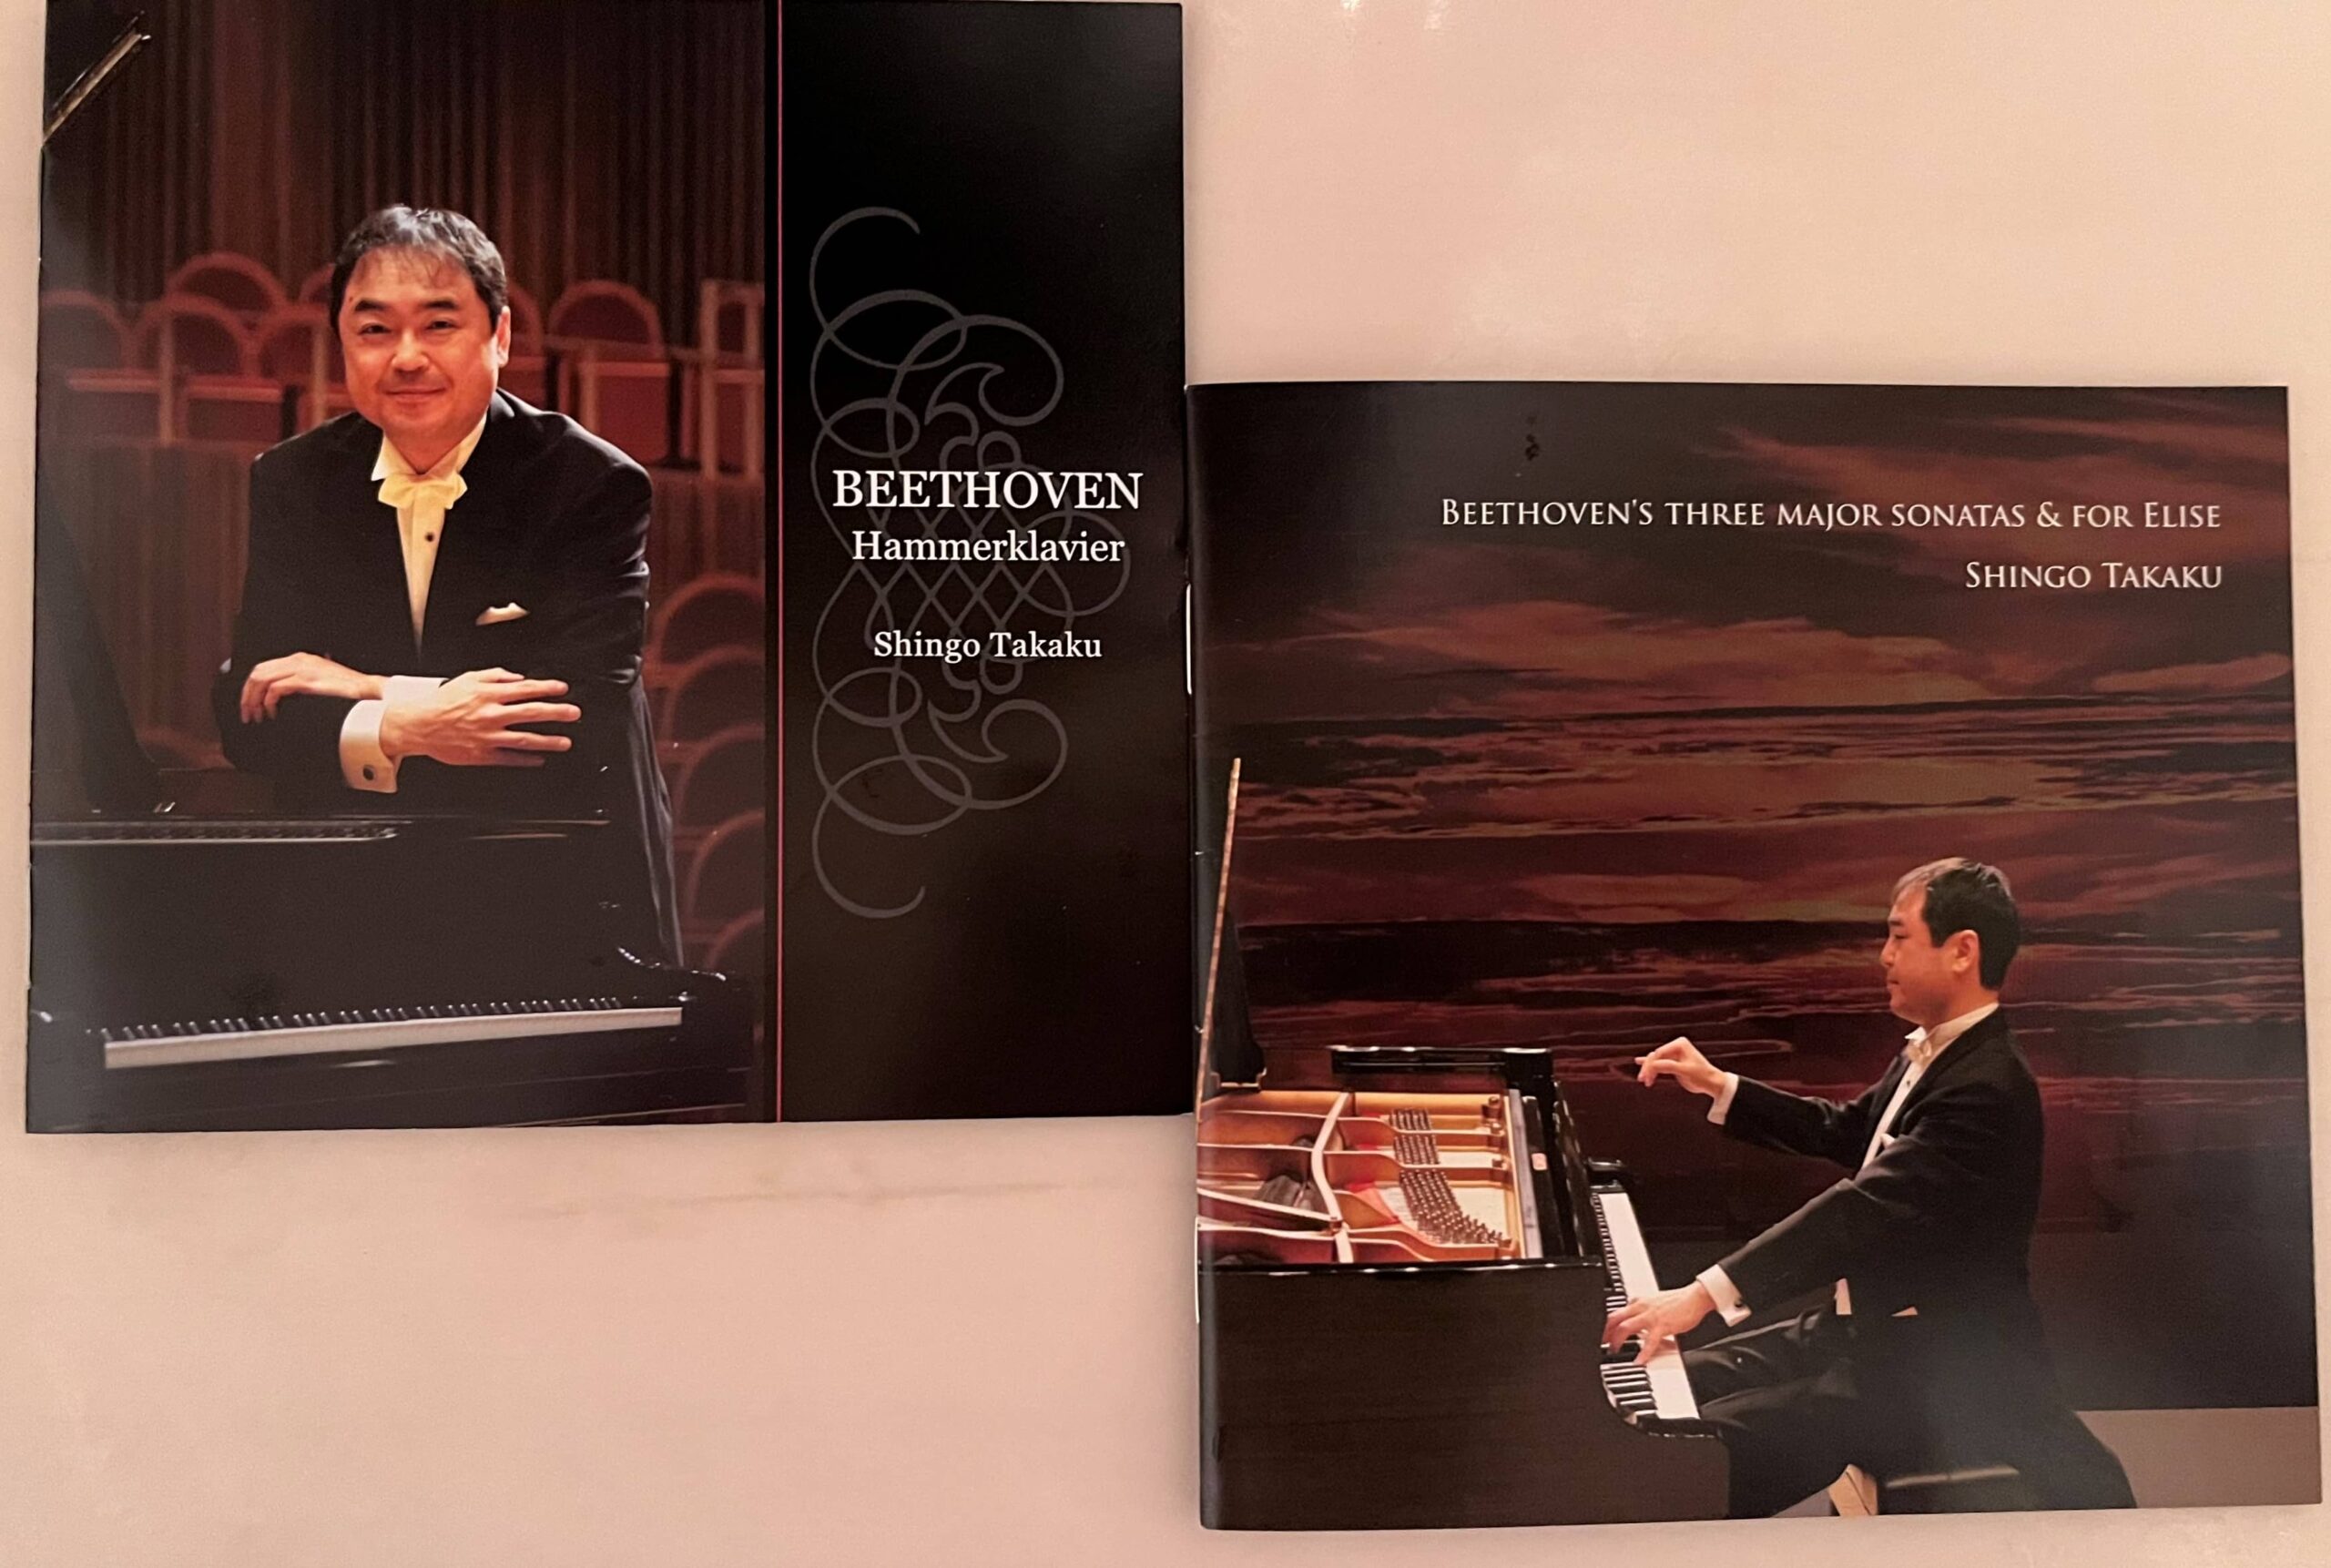 高久先生のCDカバー 「ベートーヴェン：ハンマークラヴィーア」(2008年)(左)と、「ベートーヴェン三大ソナタとエリーゼのために」(2015年)(右)